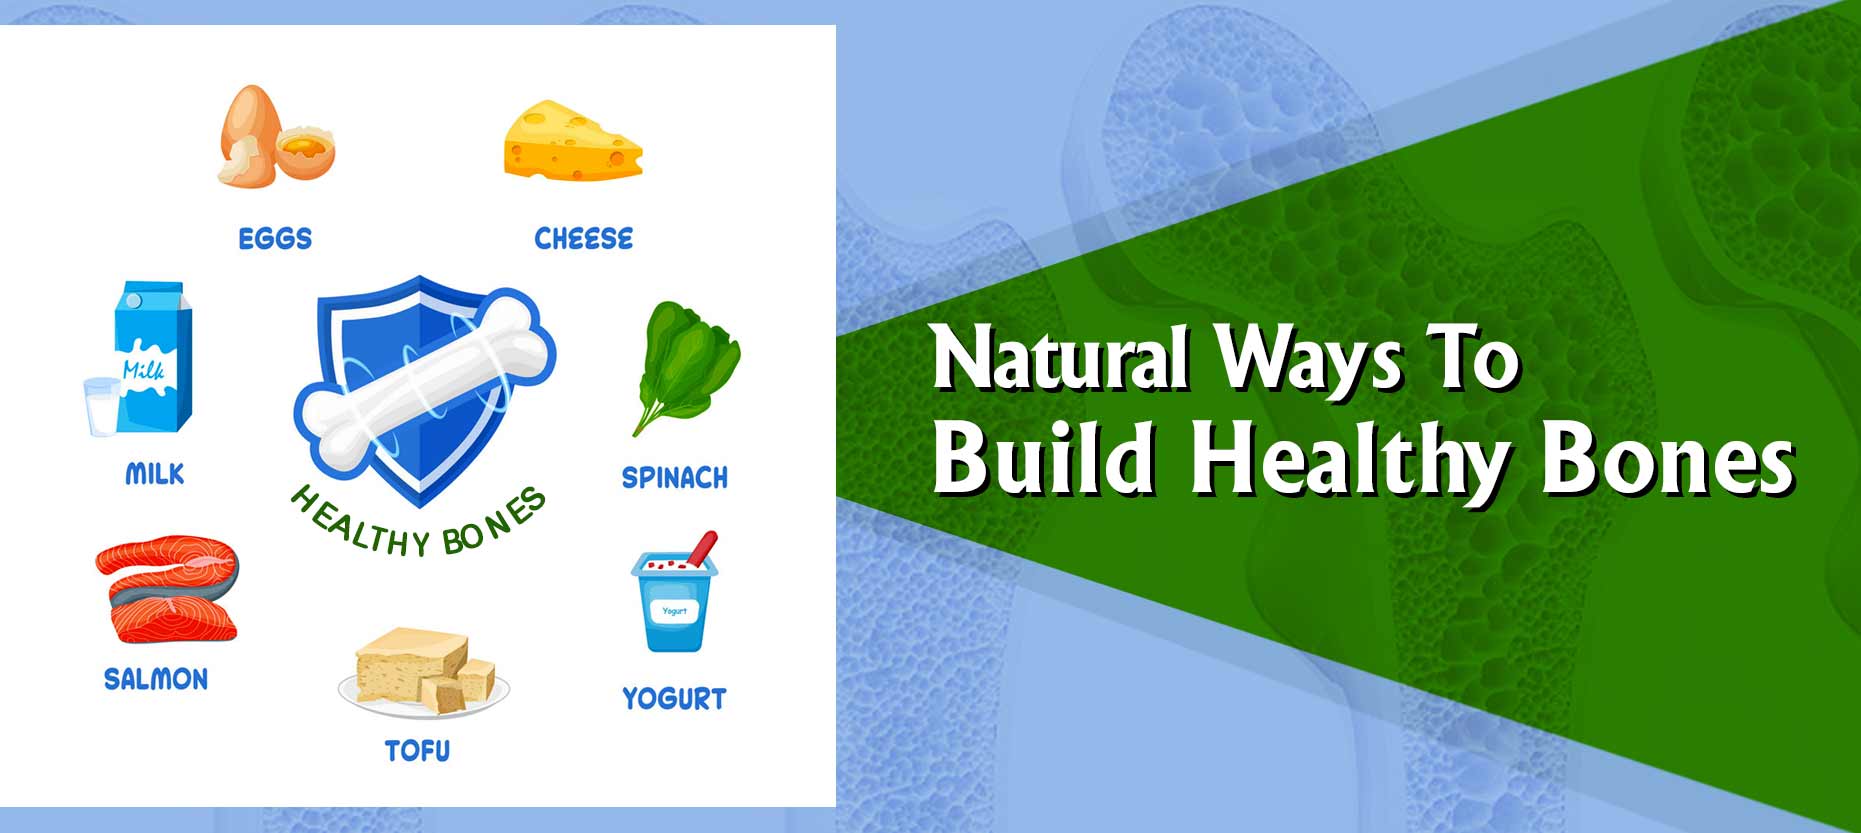 Natural Ways To Build Healthy Bones